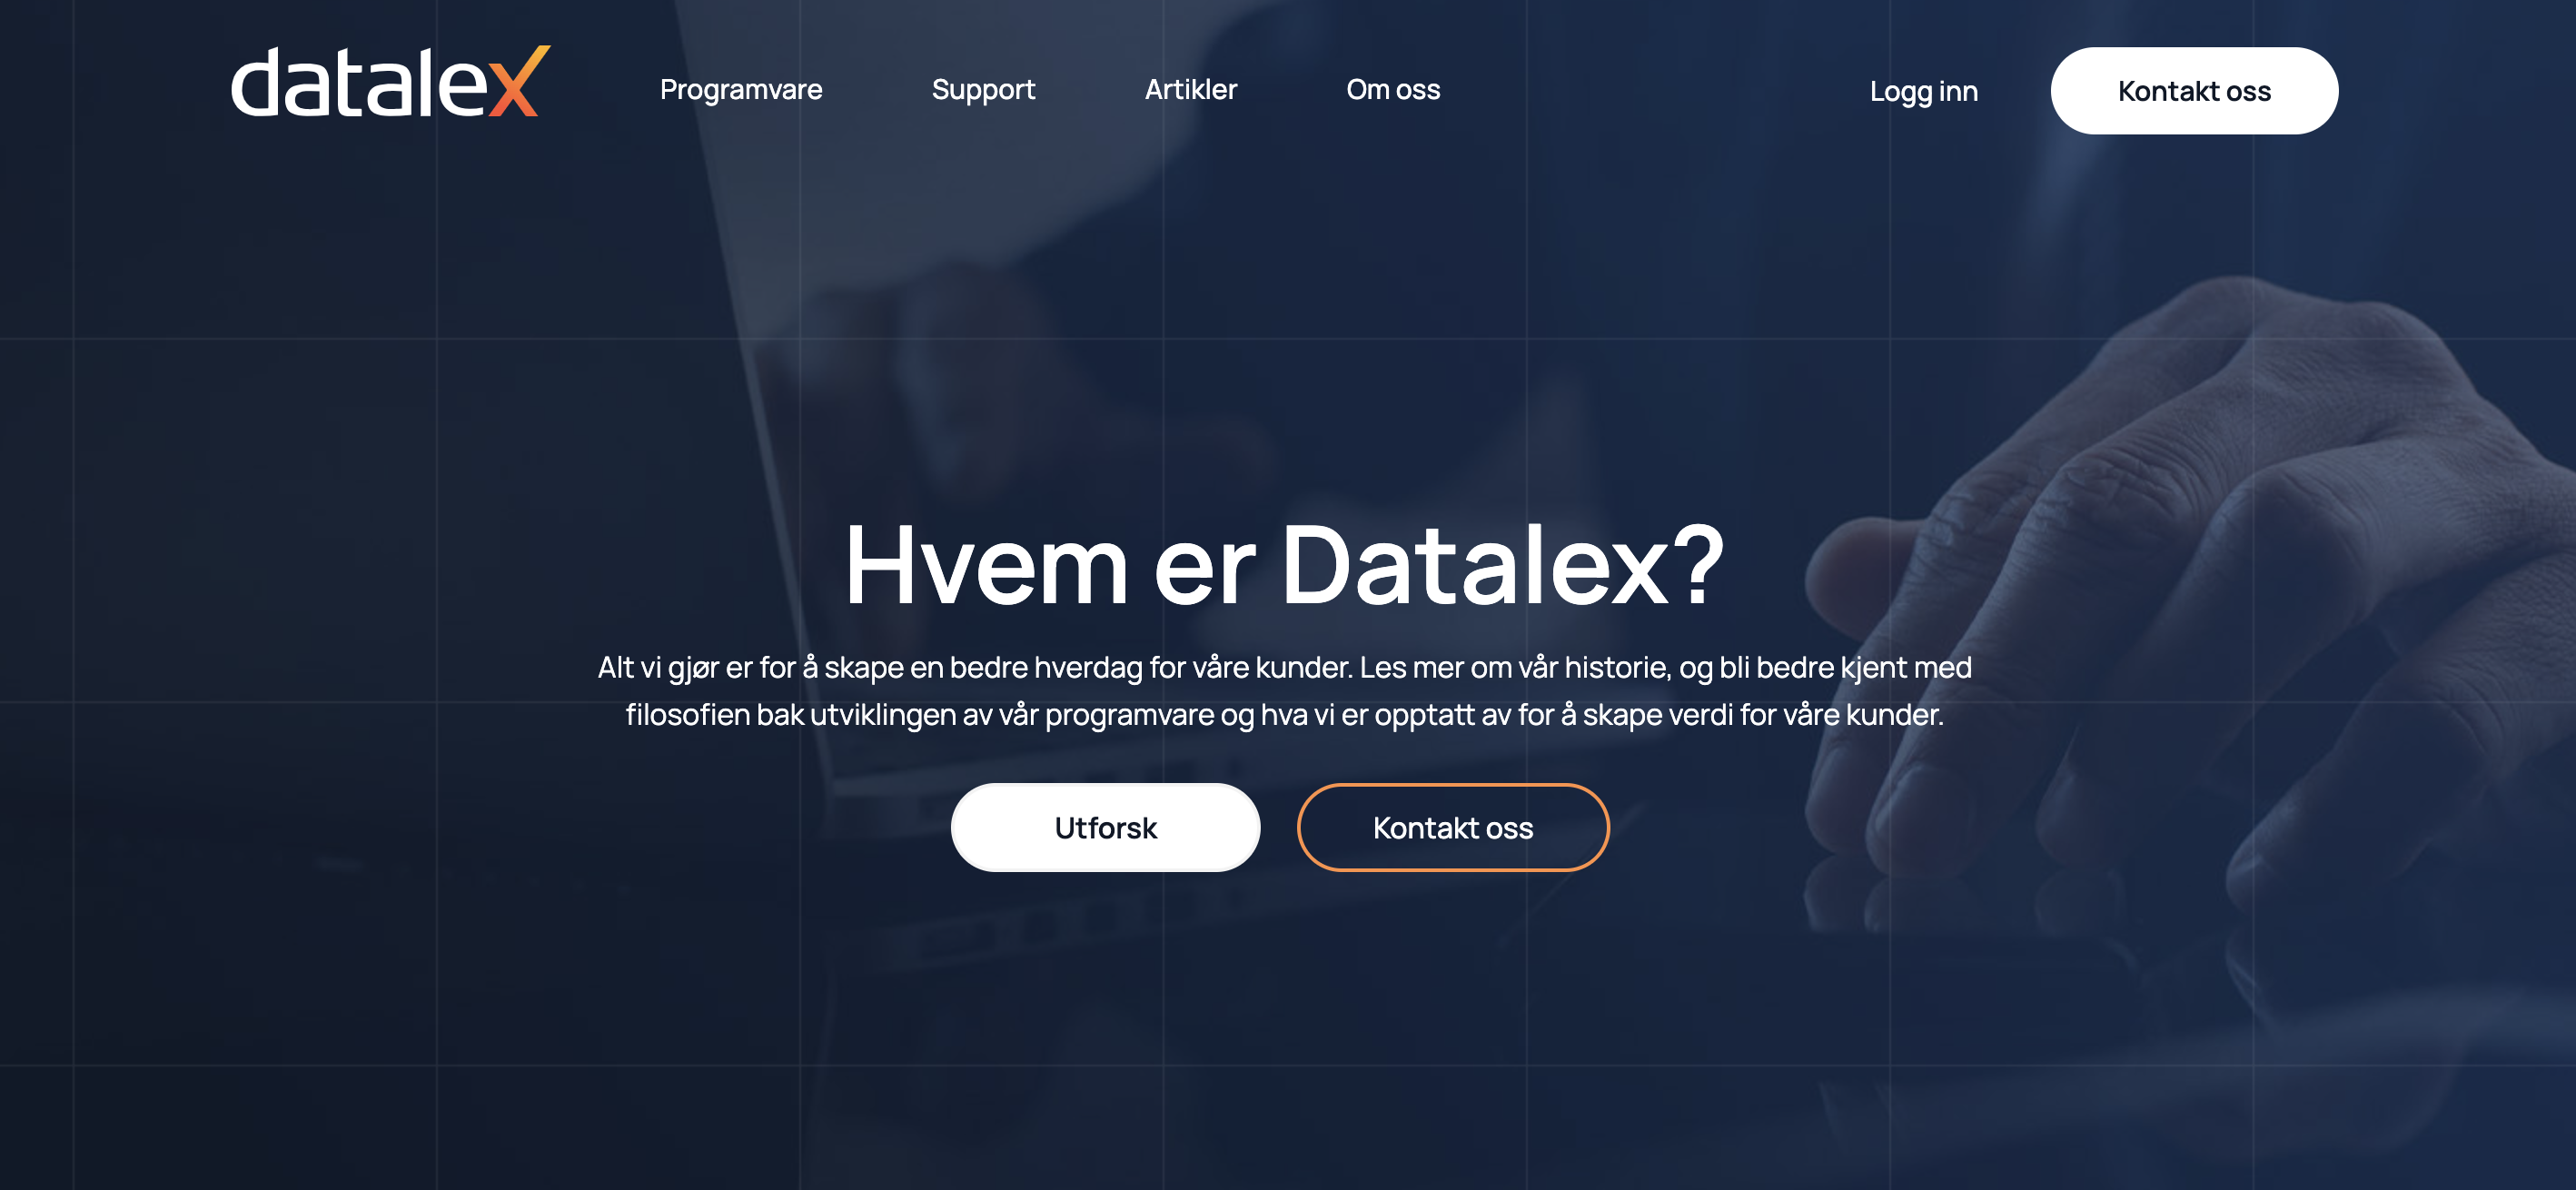 Datalex Software lansering av ny nettside